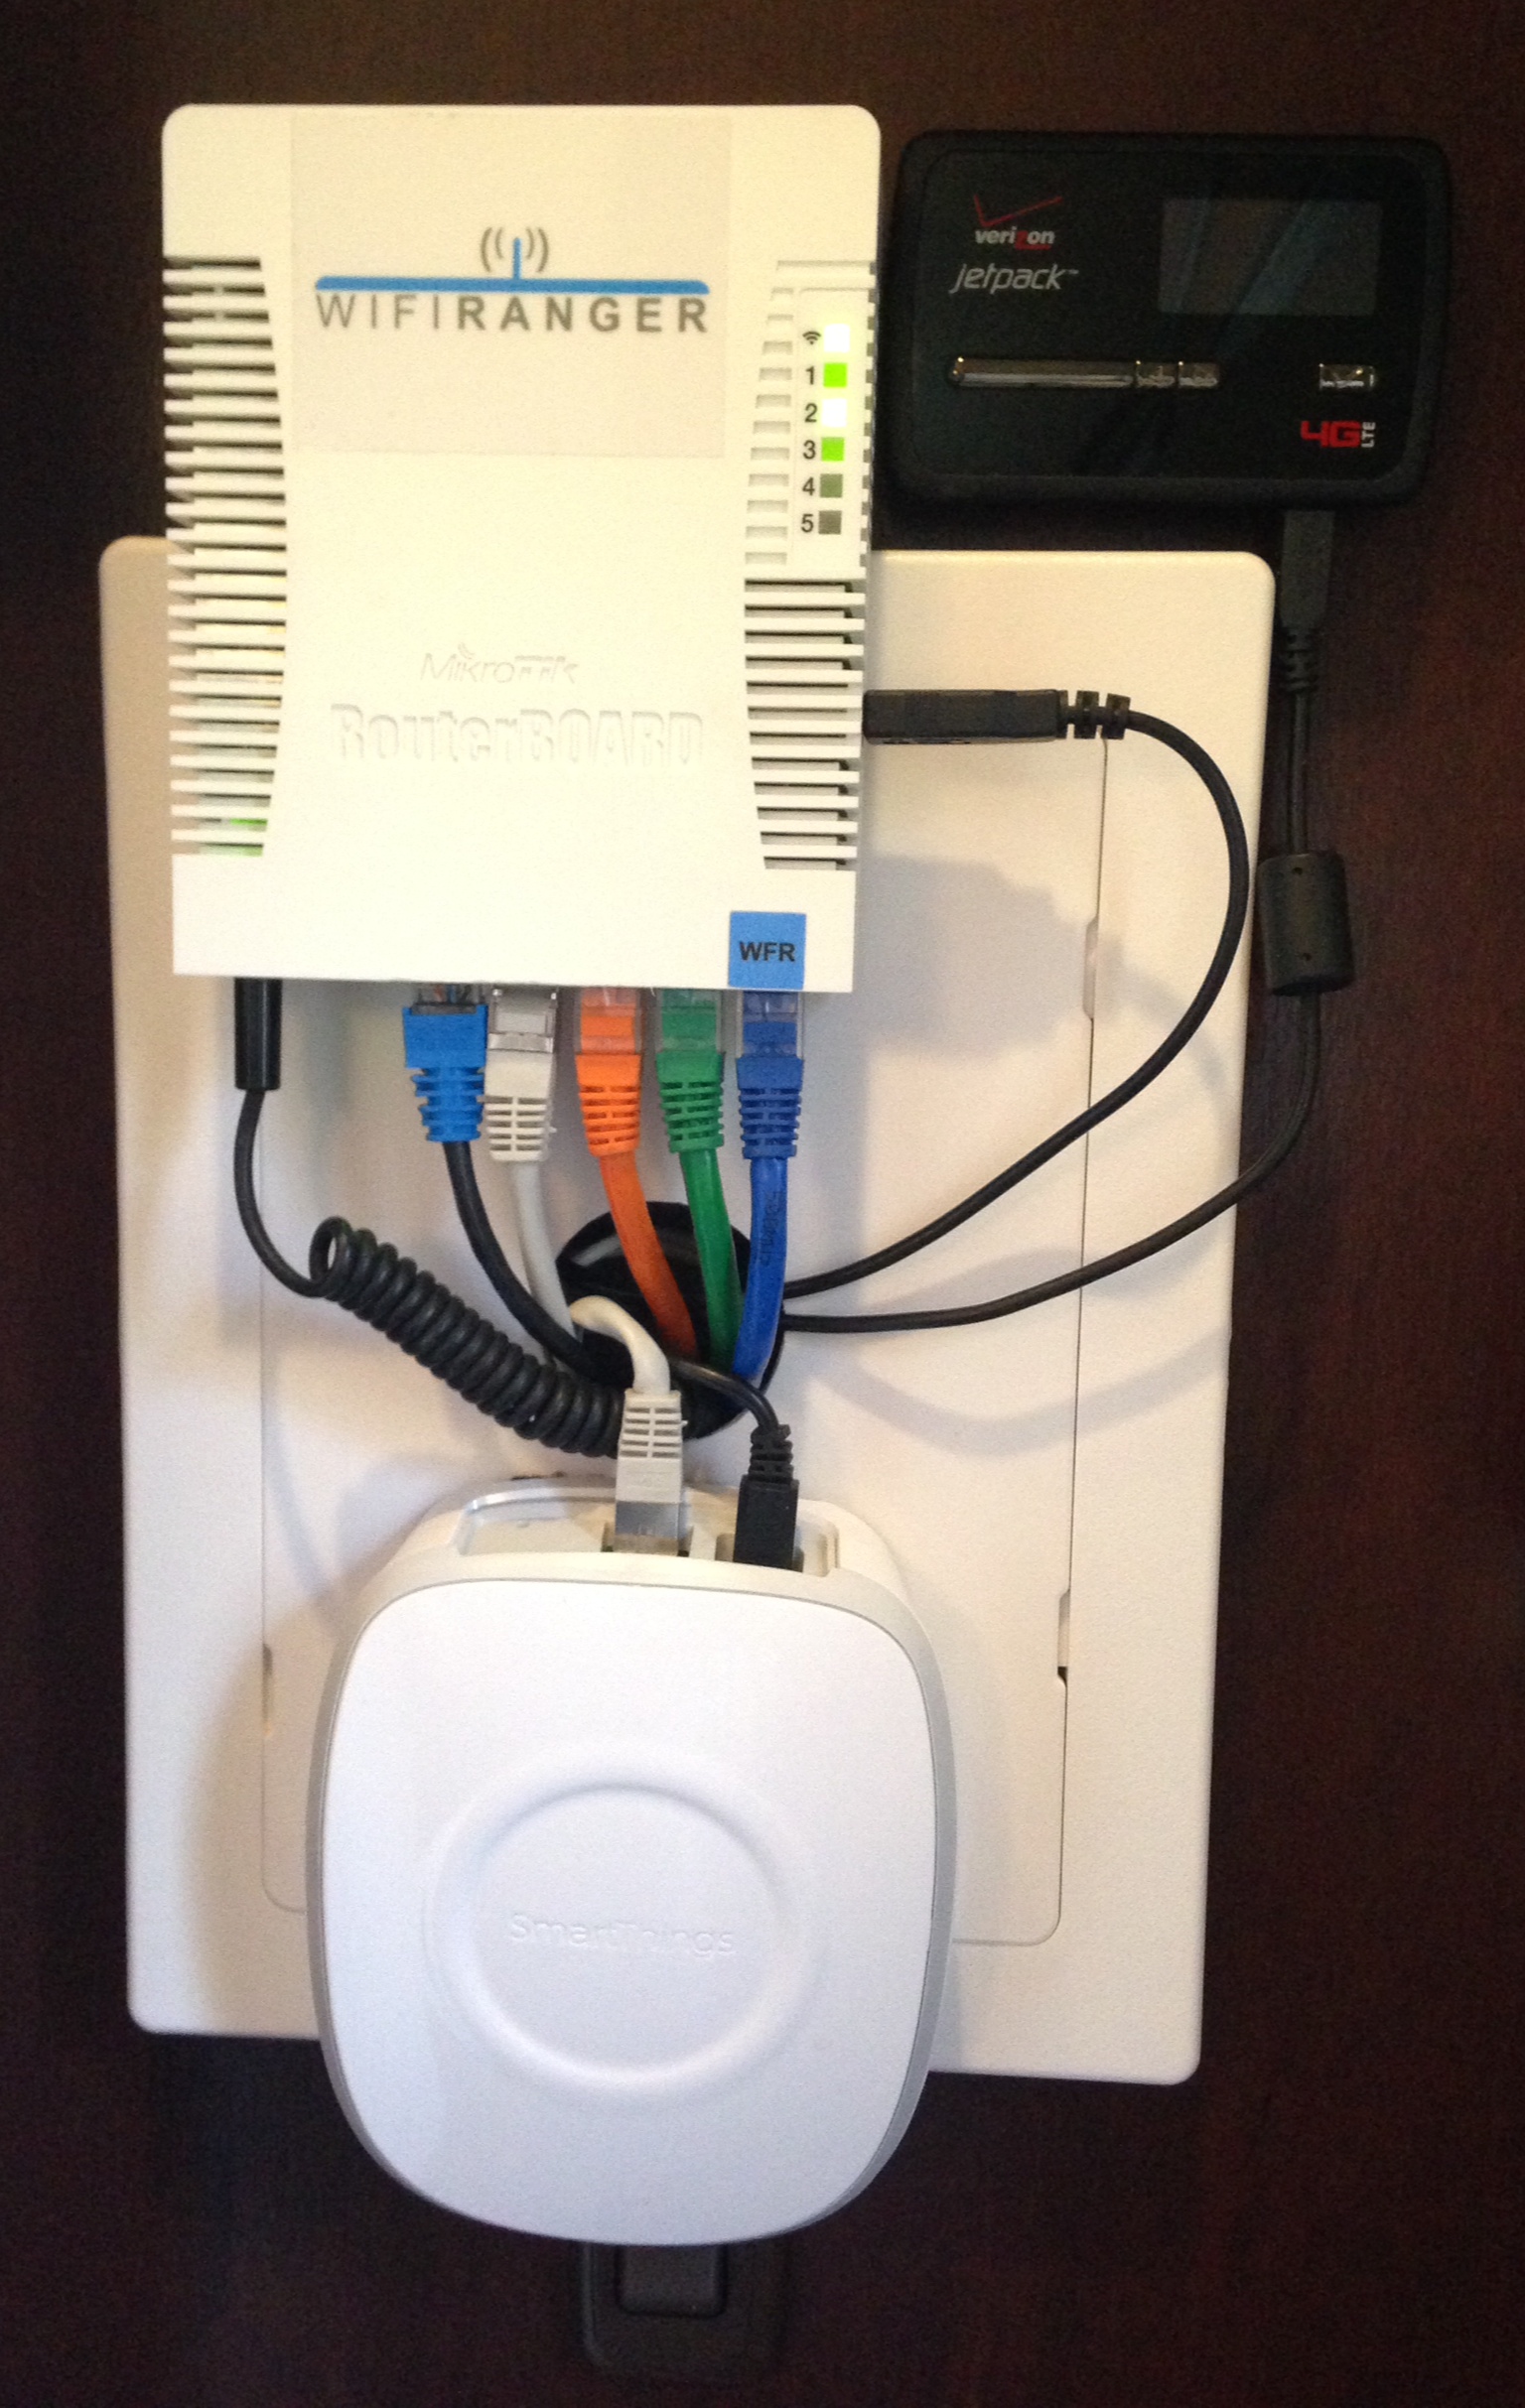 WiFi Ranger GO Router, Smartthings Hub and Novatel  4620LE Cellular Modem